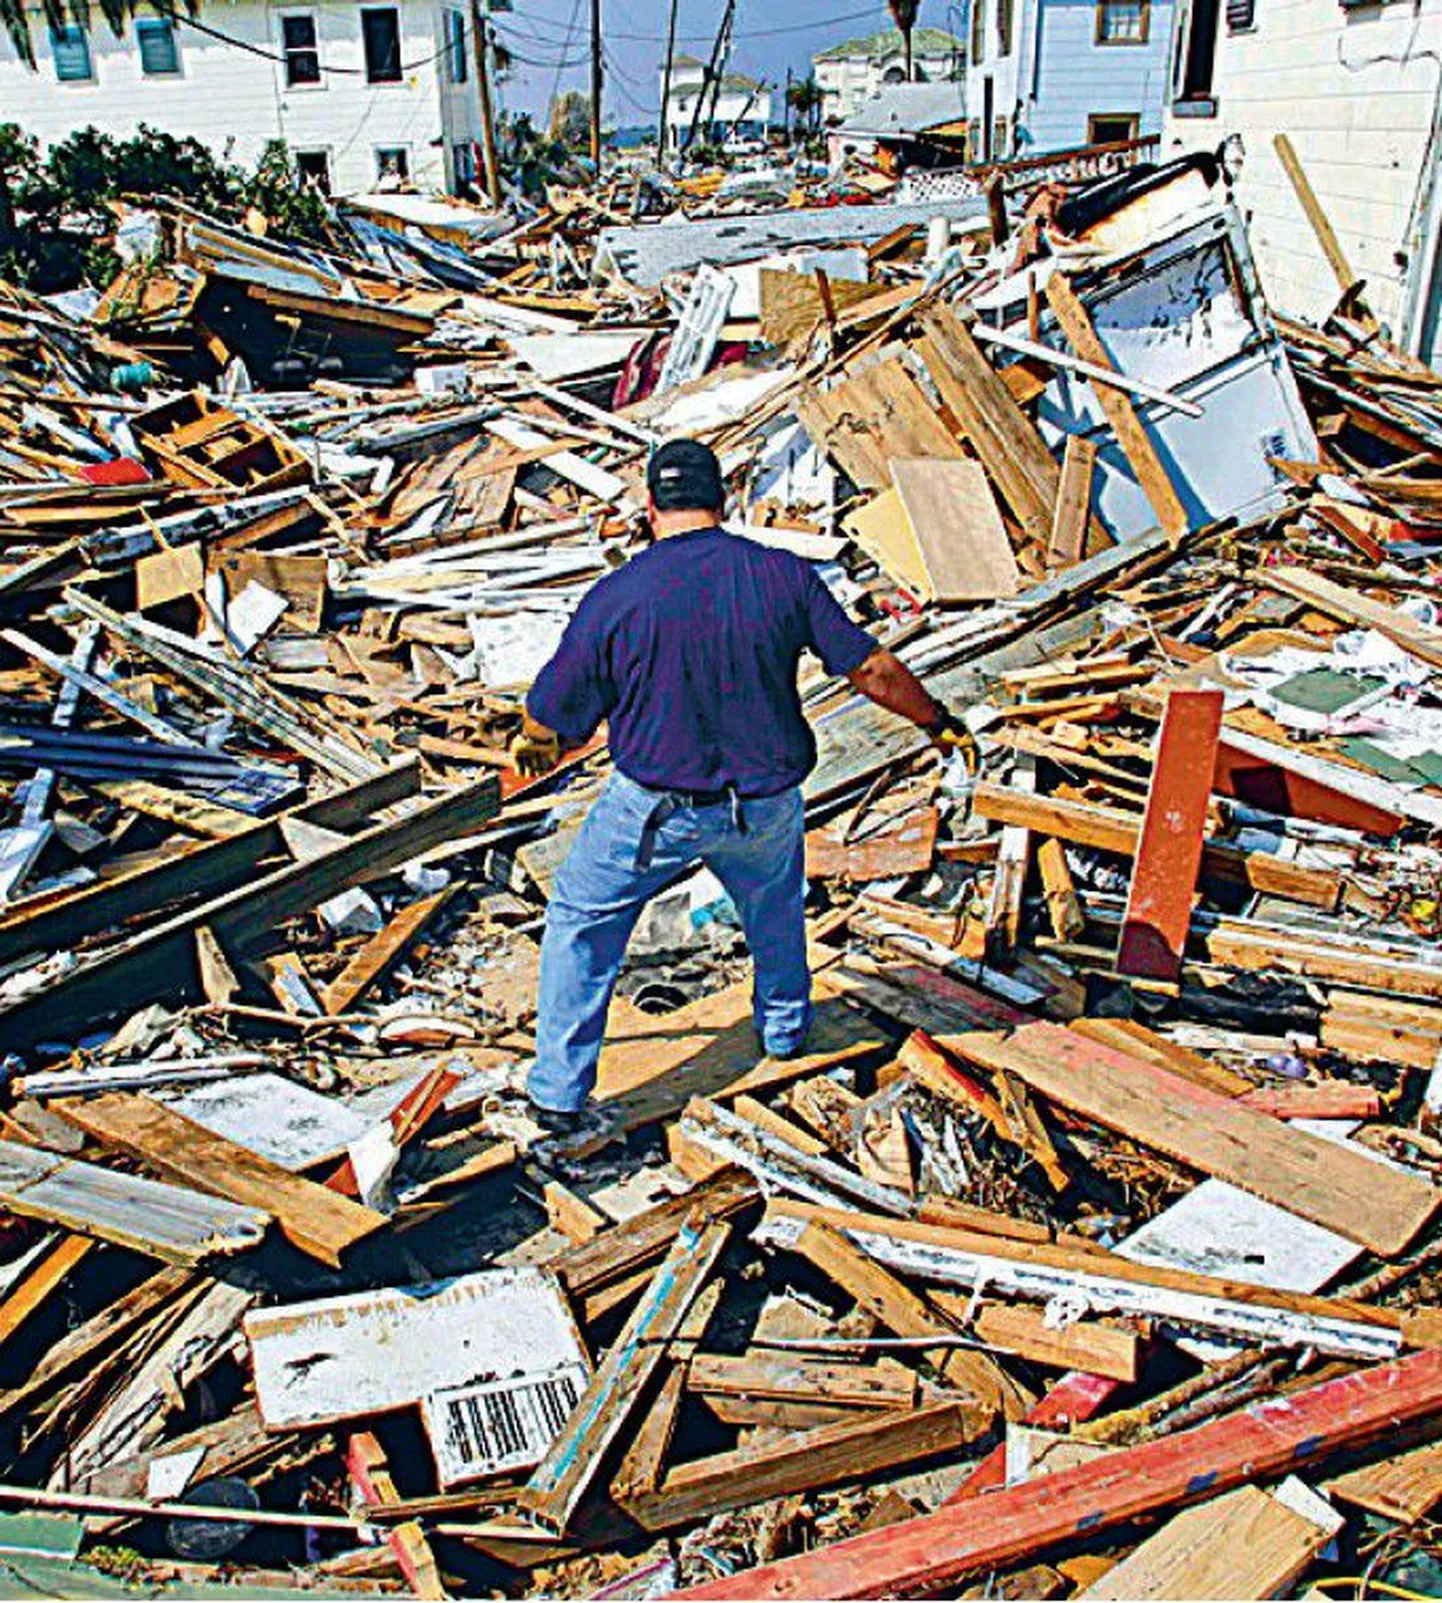 Galvestoni linna USAs kaitseb üleujutuste eest viie meetri kõrgune vall, kuid orkaan Ike tegi seal ikkagi laastamistööd.